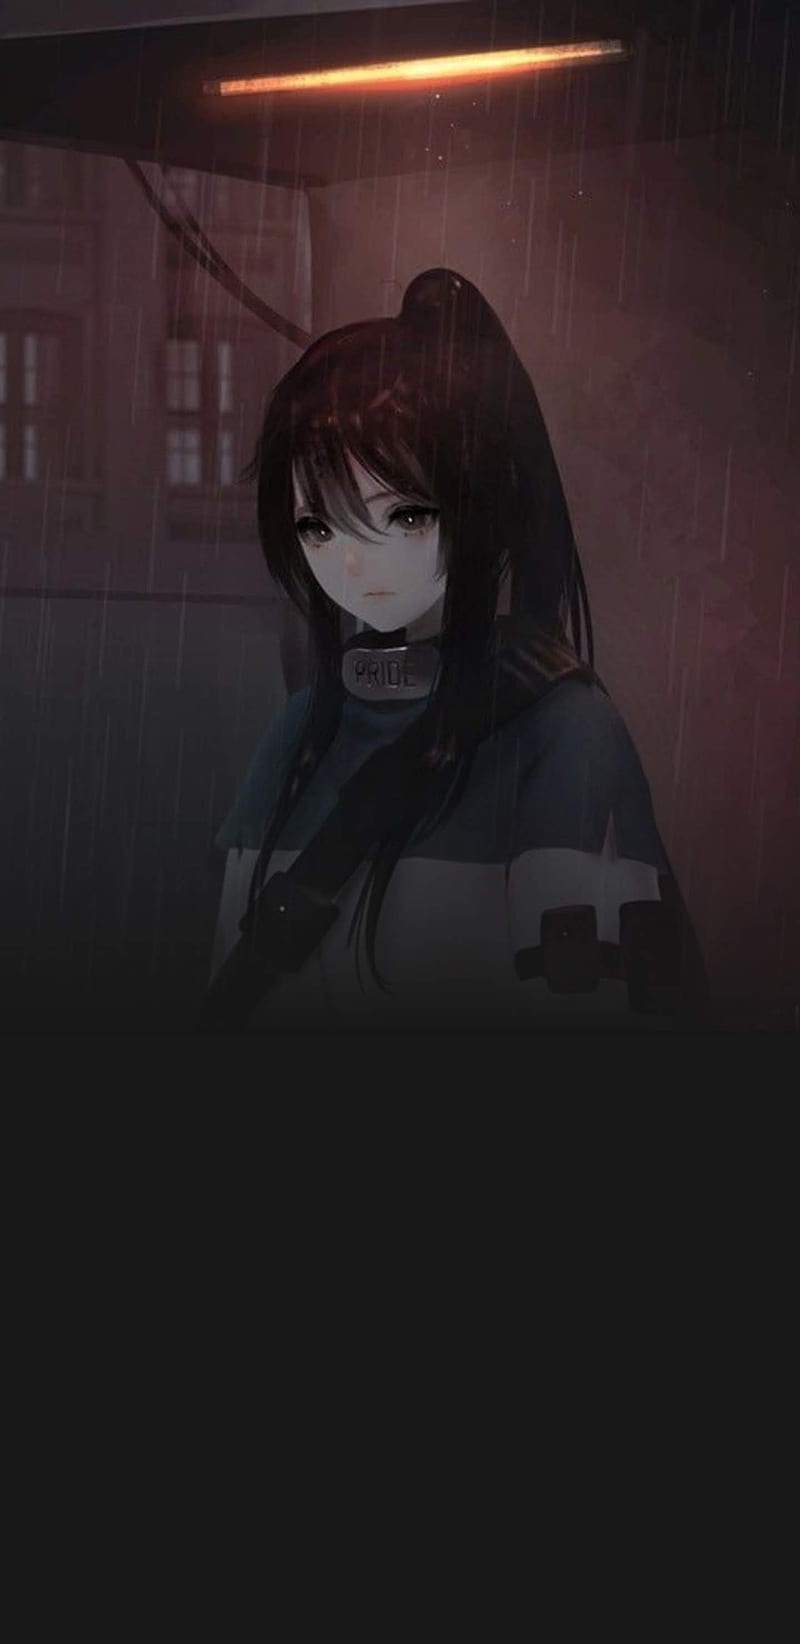 Sad anime girl